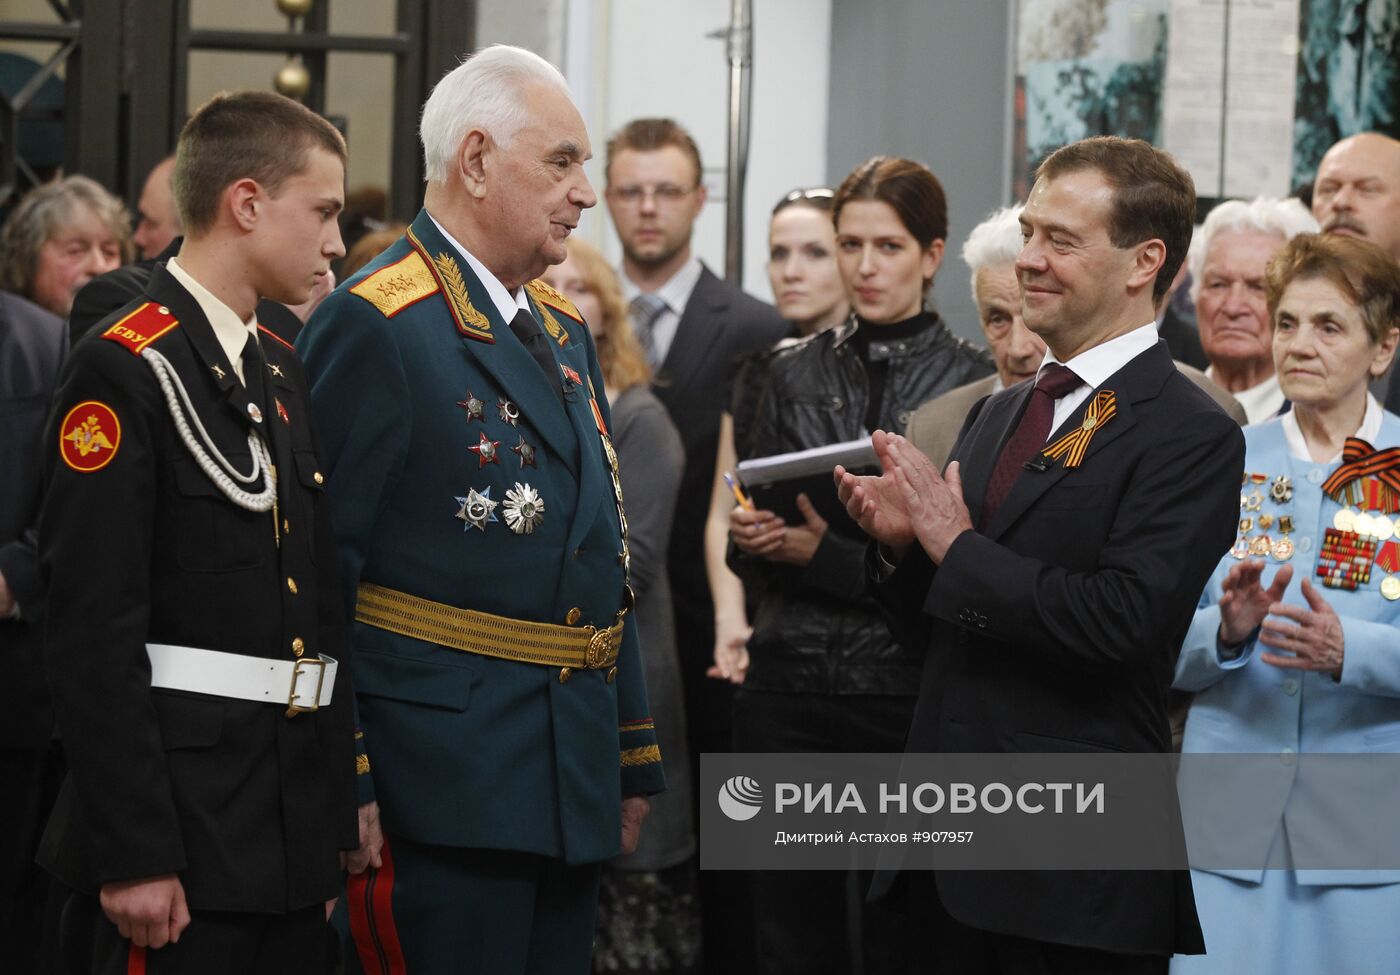 Д.Медведев посетил Центральный музей Вооруженных сил РФ